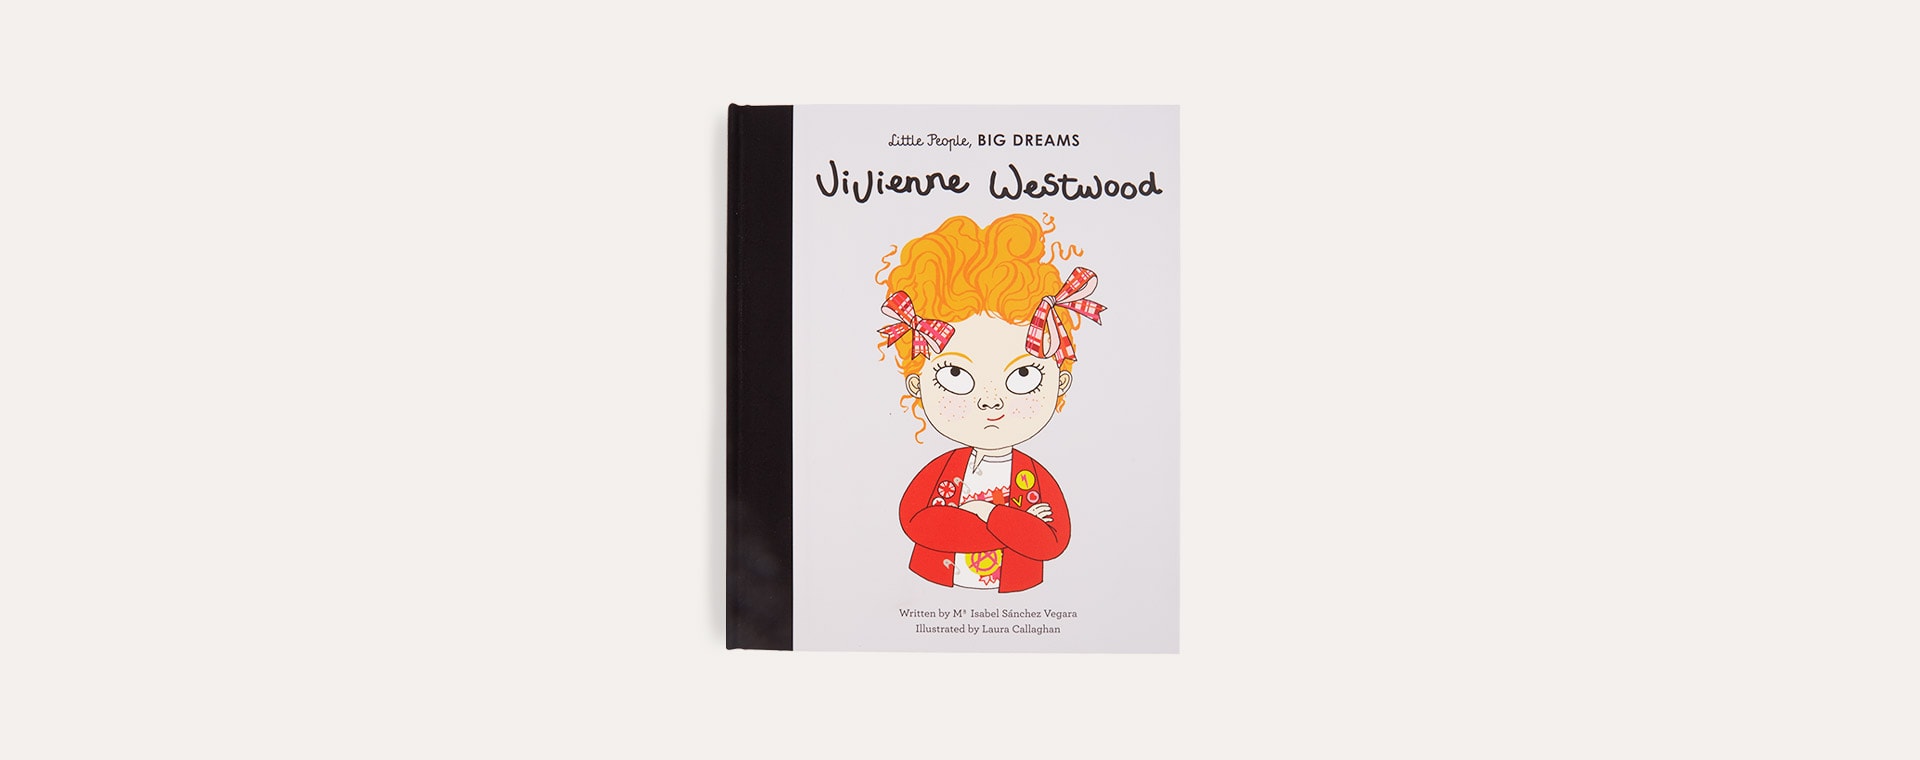 Grey bookspeed Little People Big Dreams: Vivienne Westwood